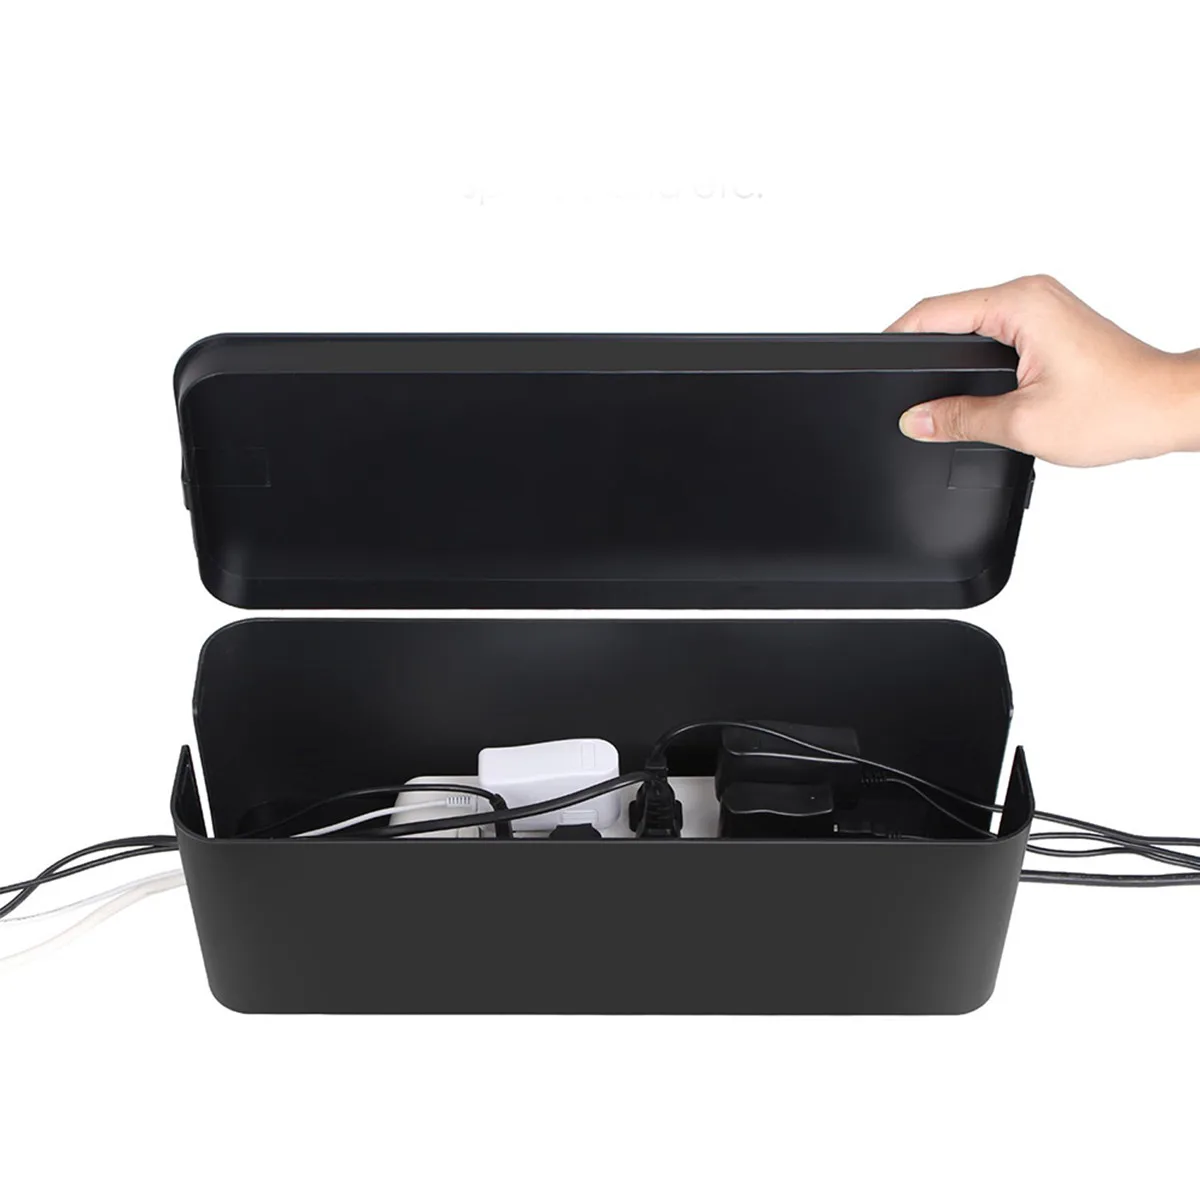 Съемный кабельный ящик для хранения 32,5x13x12,5 см, черно-белый дизайн, удобный выключатель питания, защита, безопасность, излучение тепла